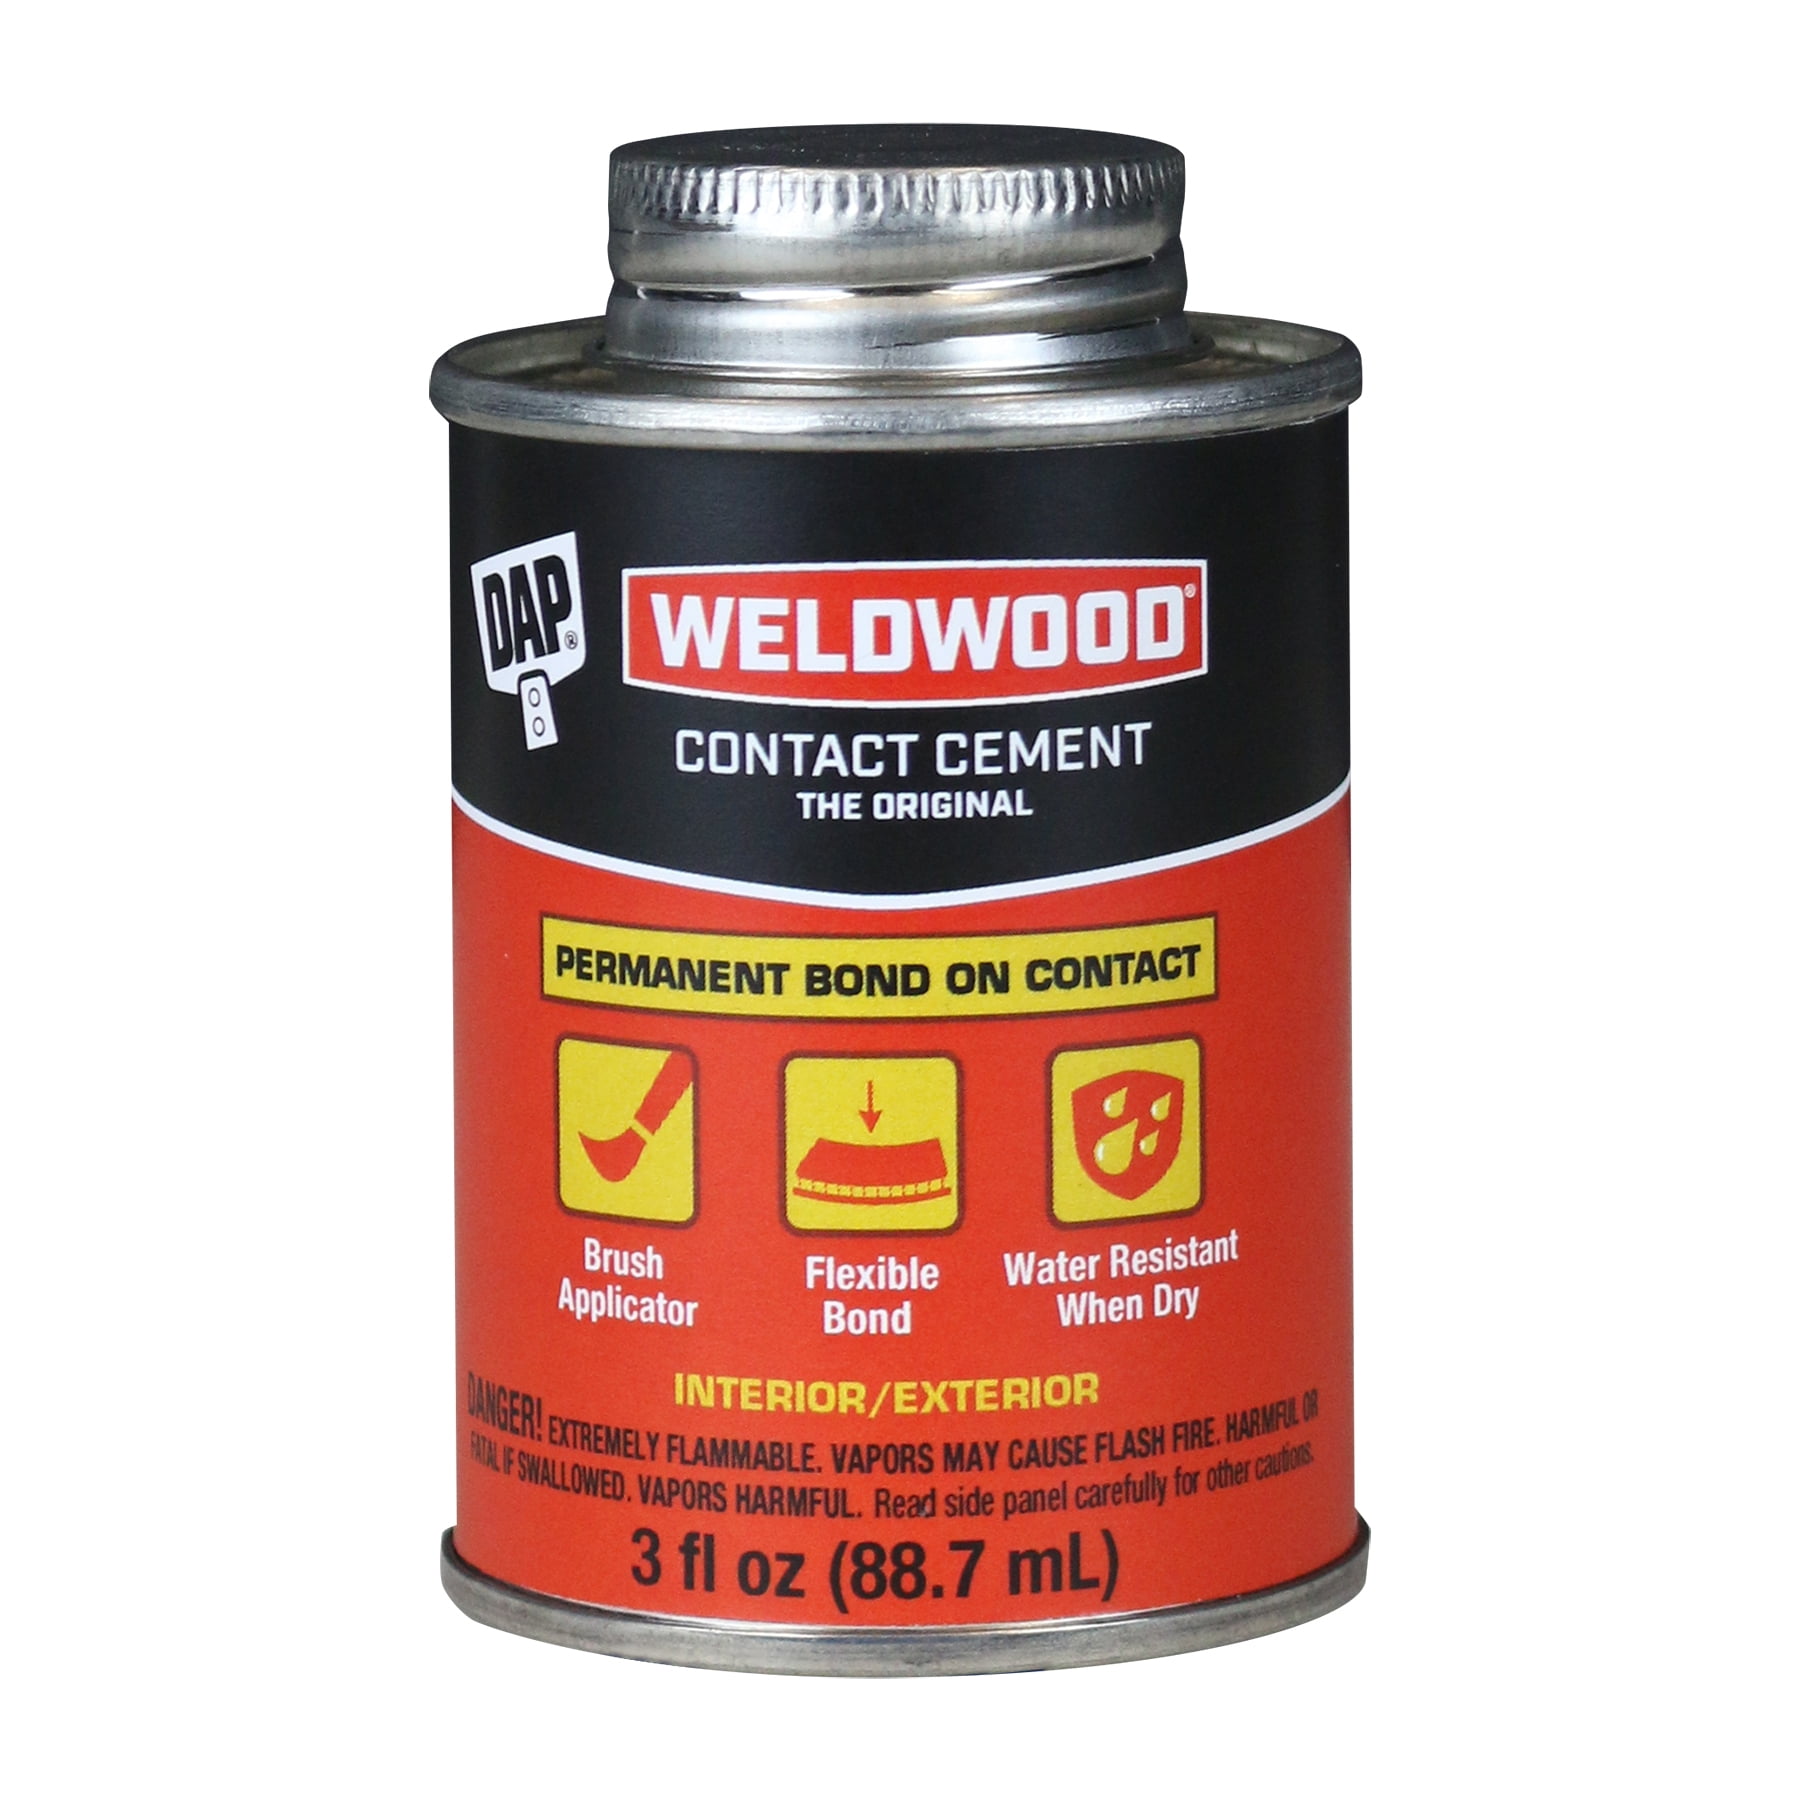 Weldwood Contact Adhesive